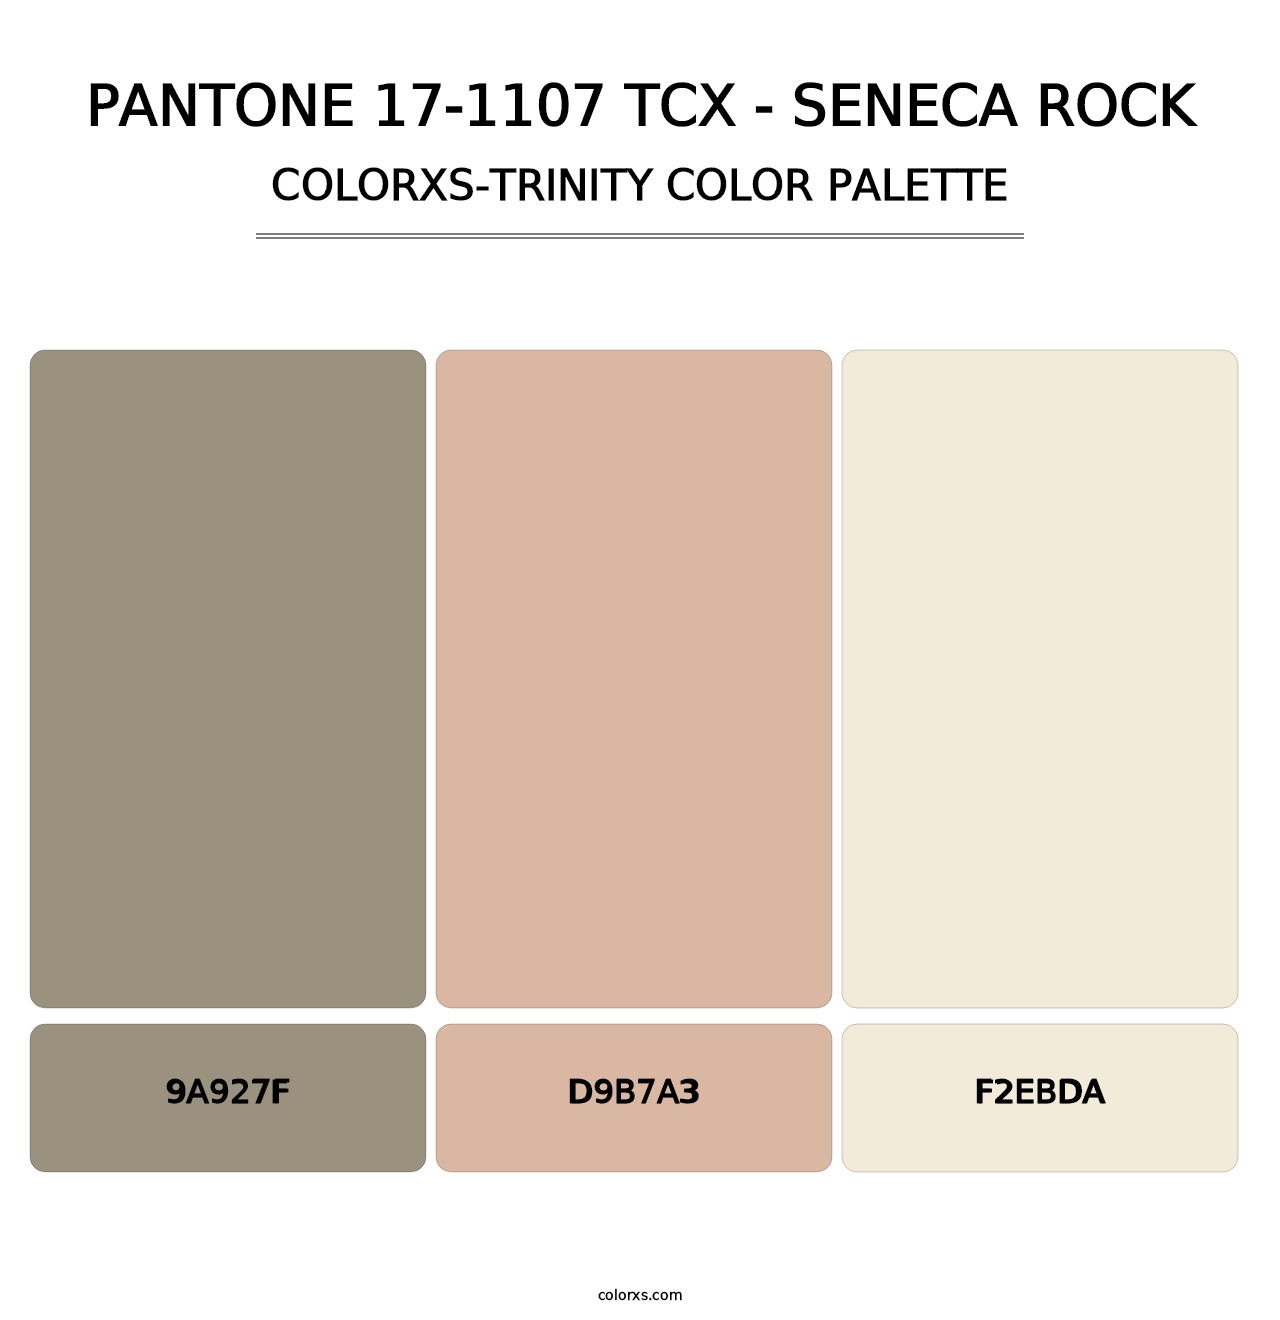 PANTONE 17-1107 TCX - Seneca Rock - Colorxs Trinity Palette